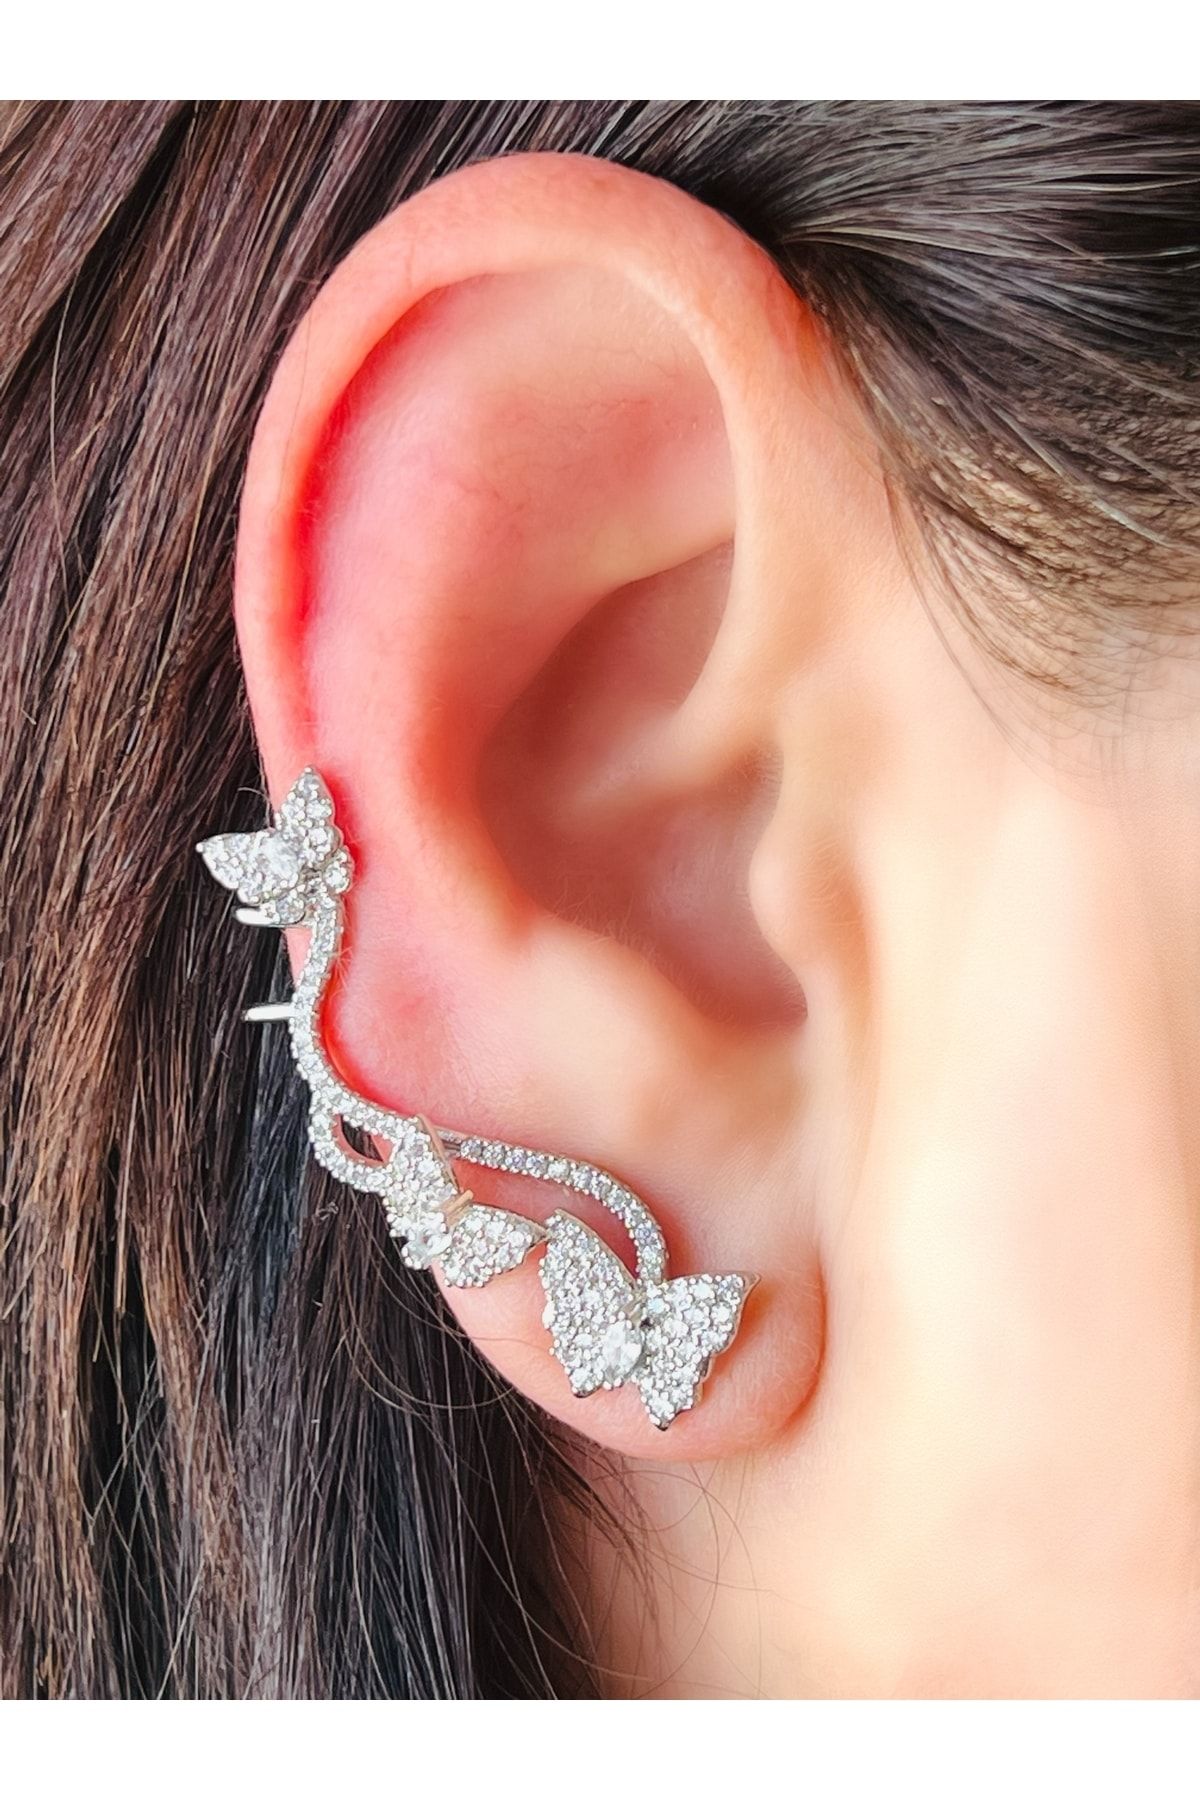 whole ear earrings with dangling motive - Odvarka Bijoux